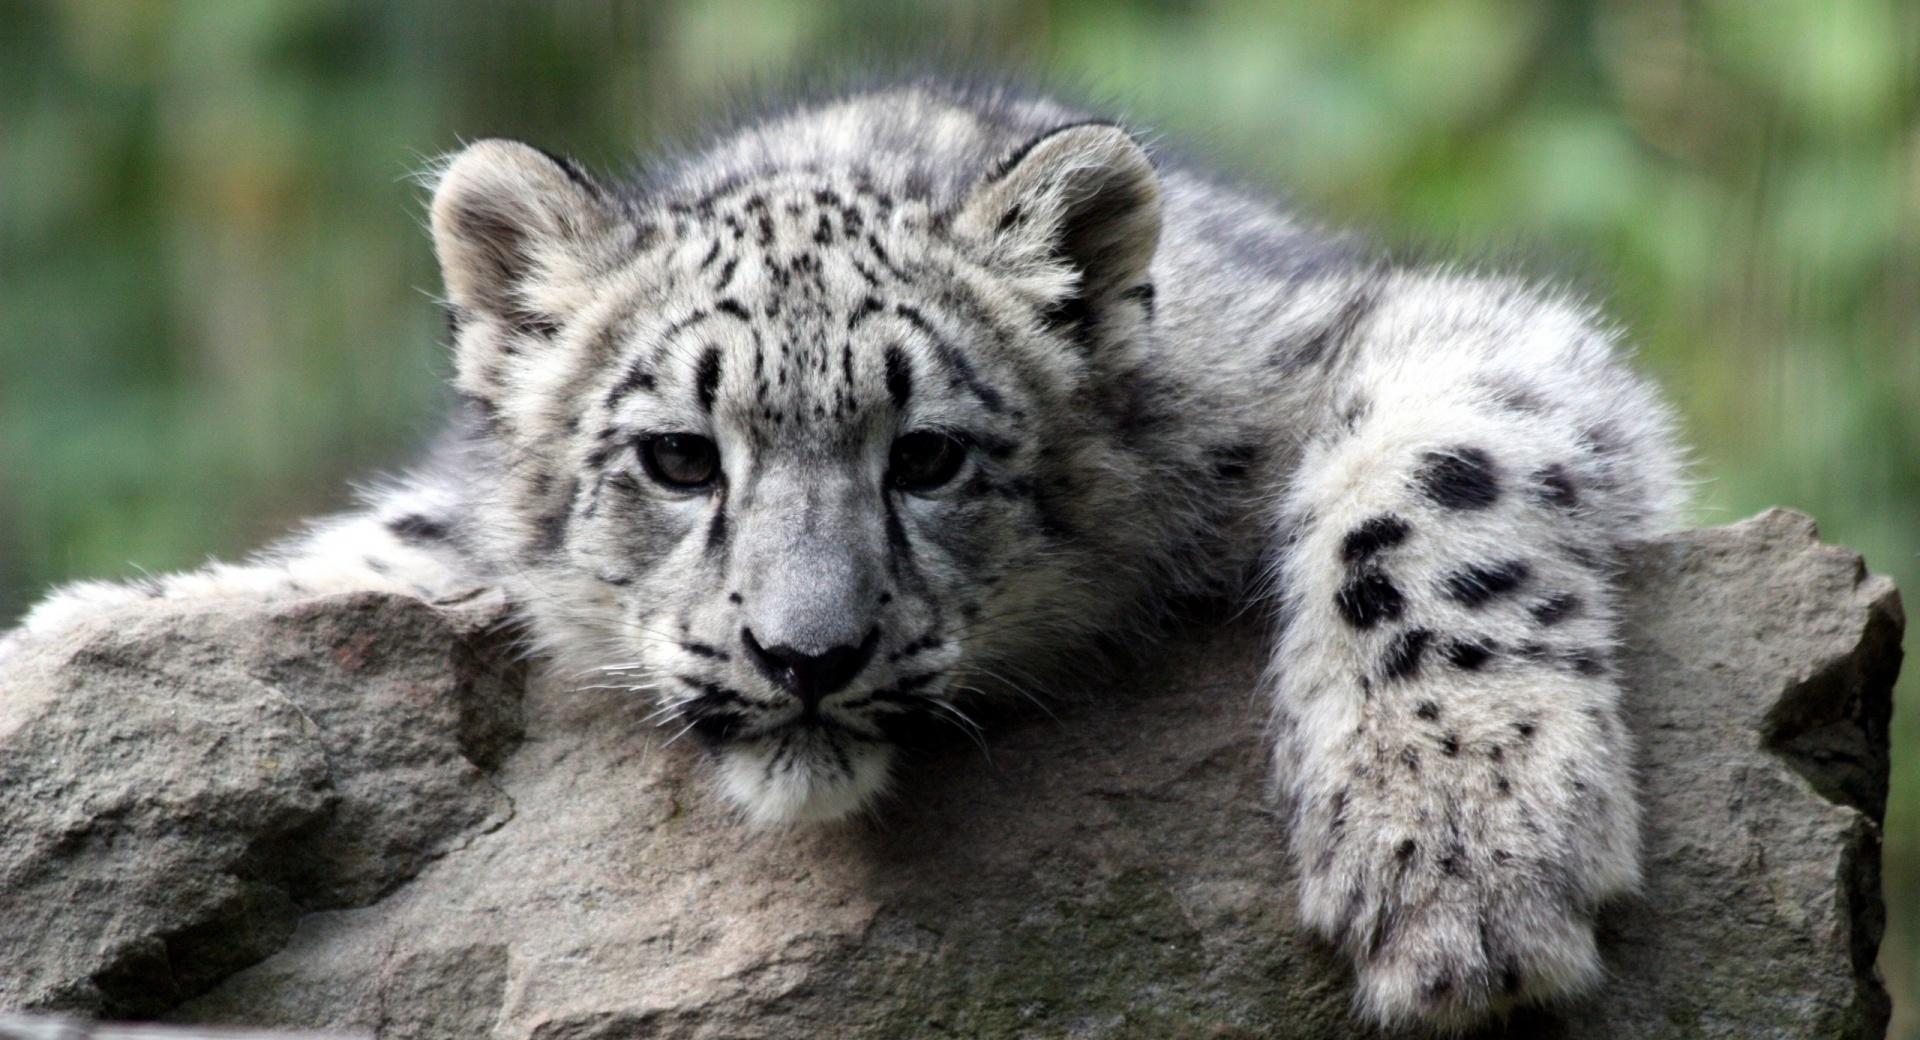 Snow Leopard Cub at 1024 x 1024 iPad size wallpapers HD quality